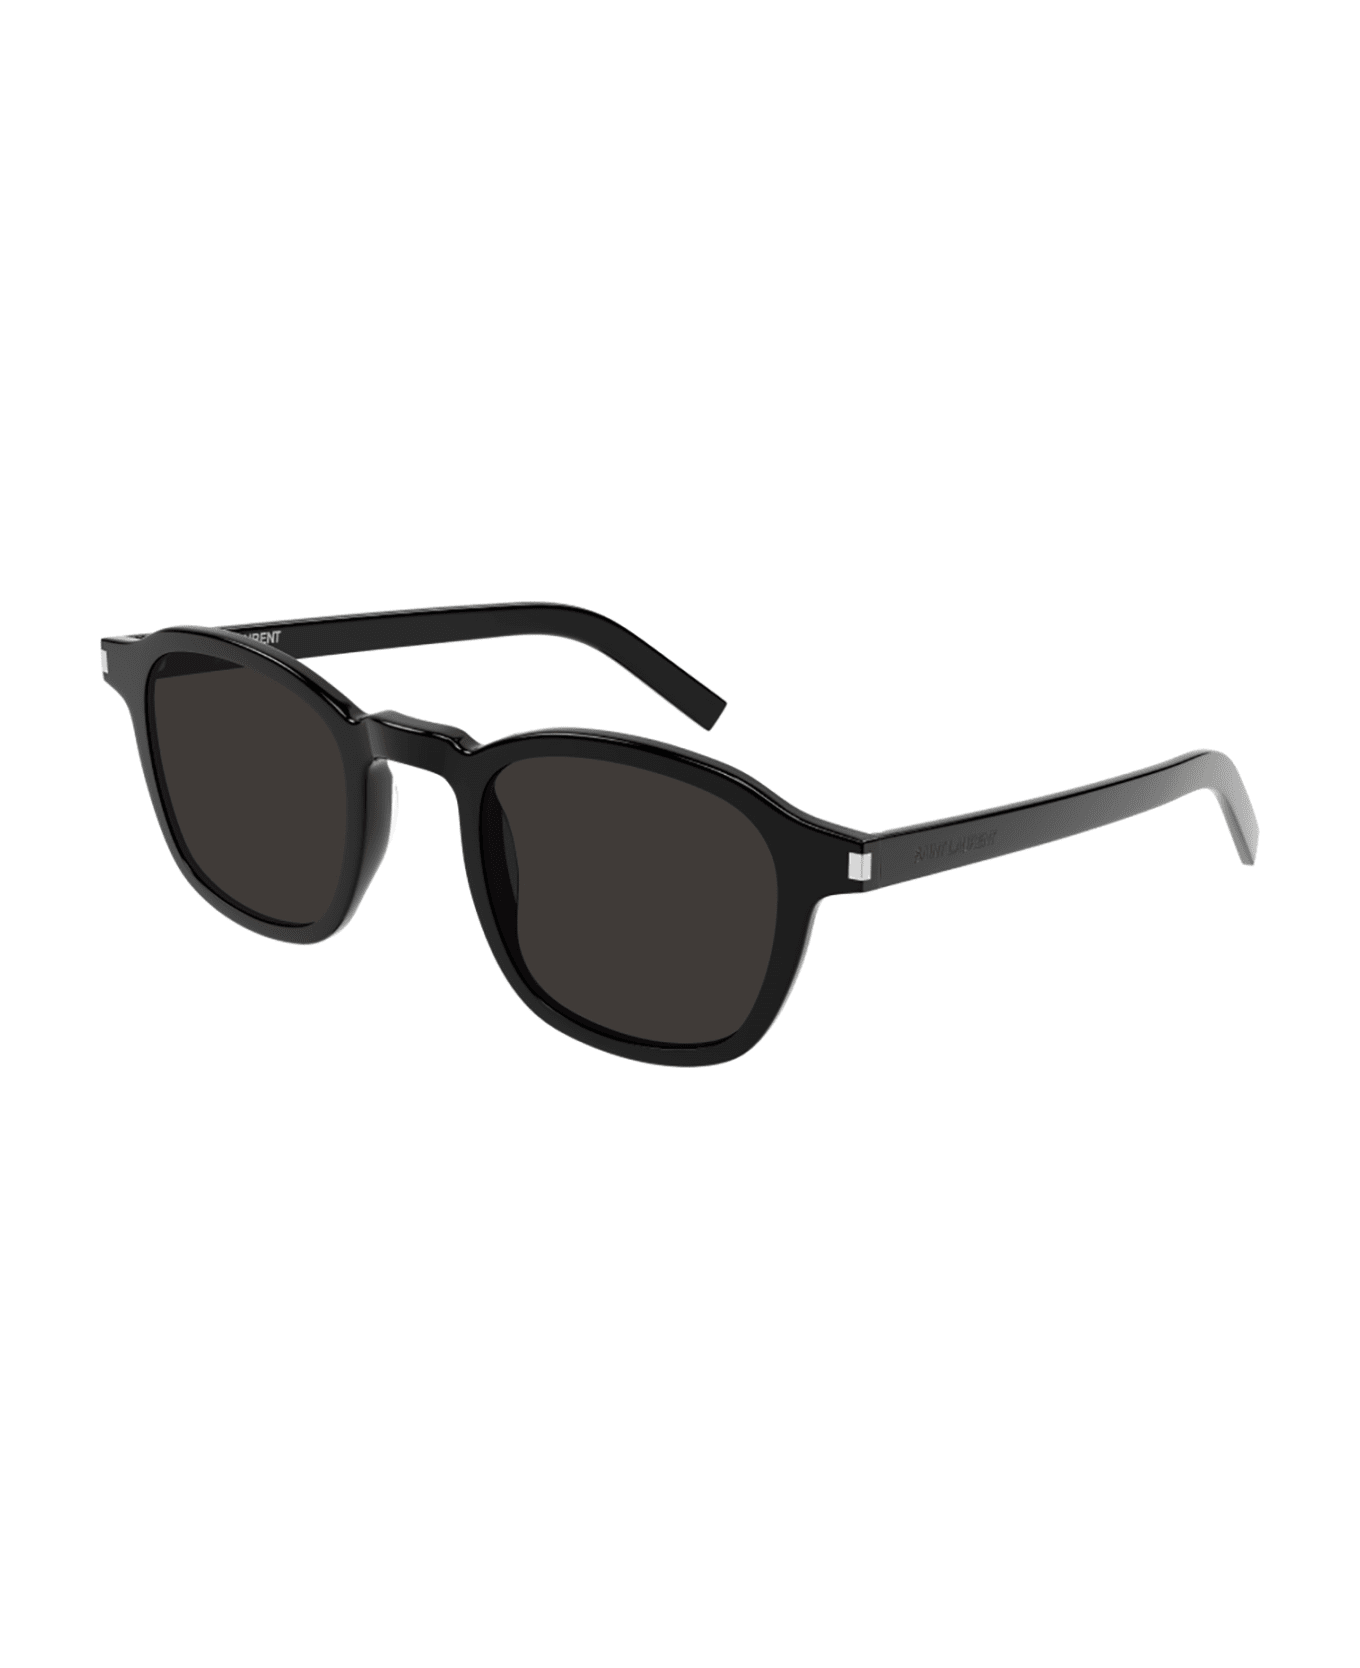 Saint Laurent Eyewear SL 549 SLIM Sunglasses - Black Black Black